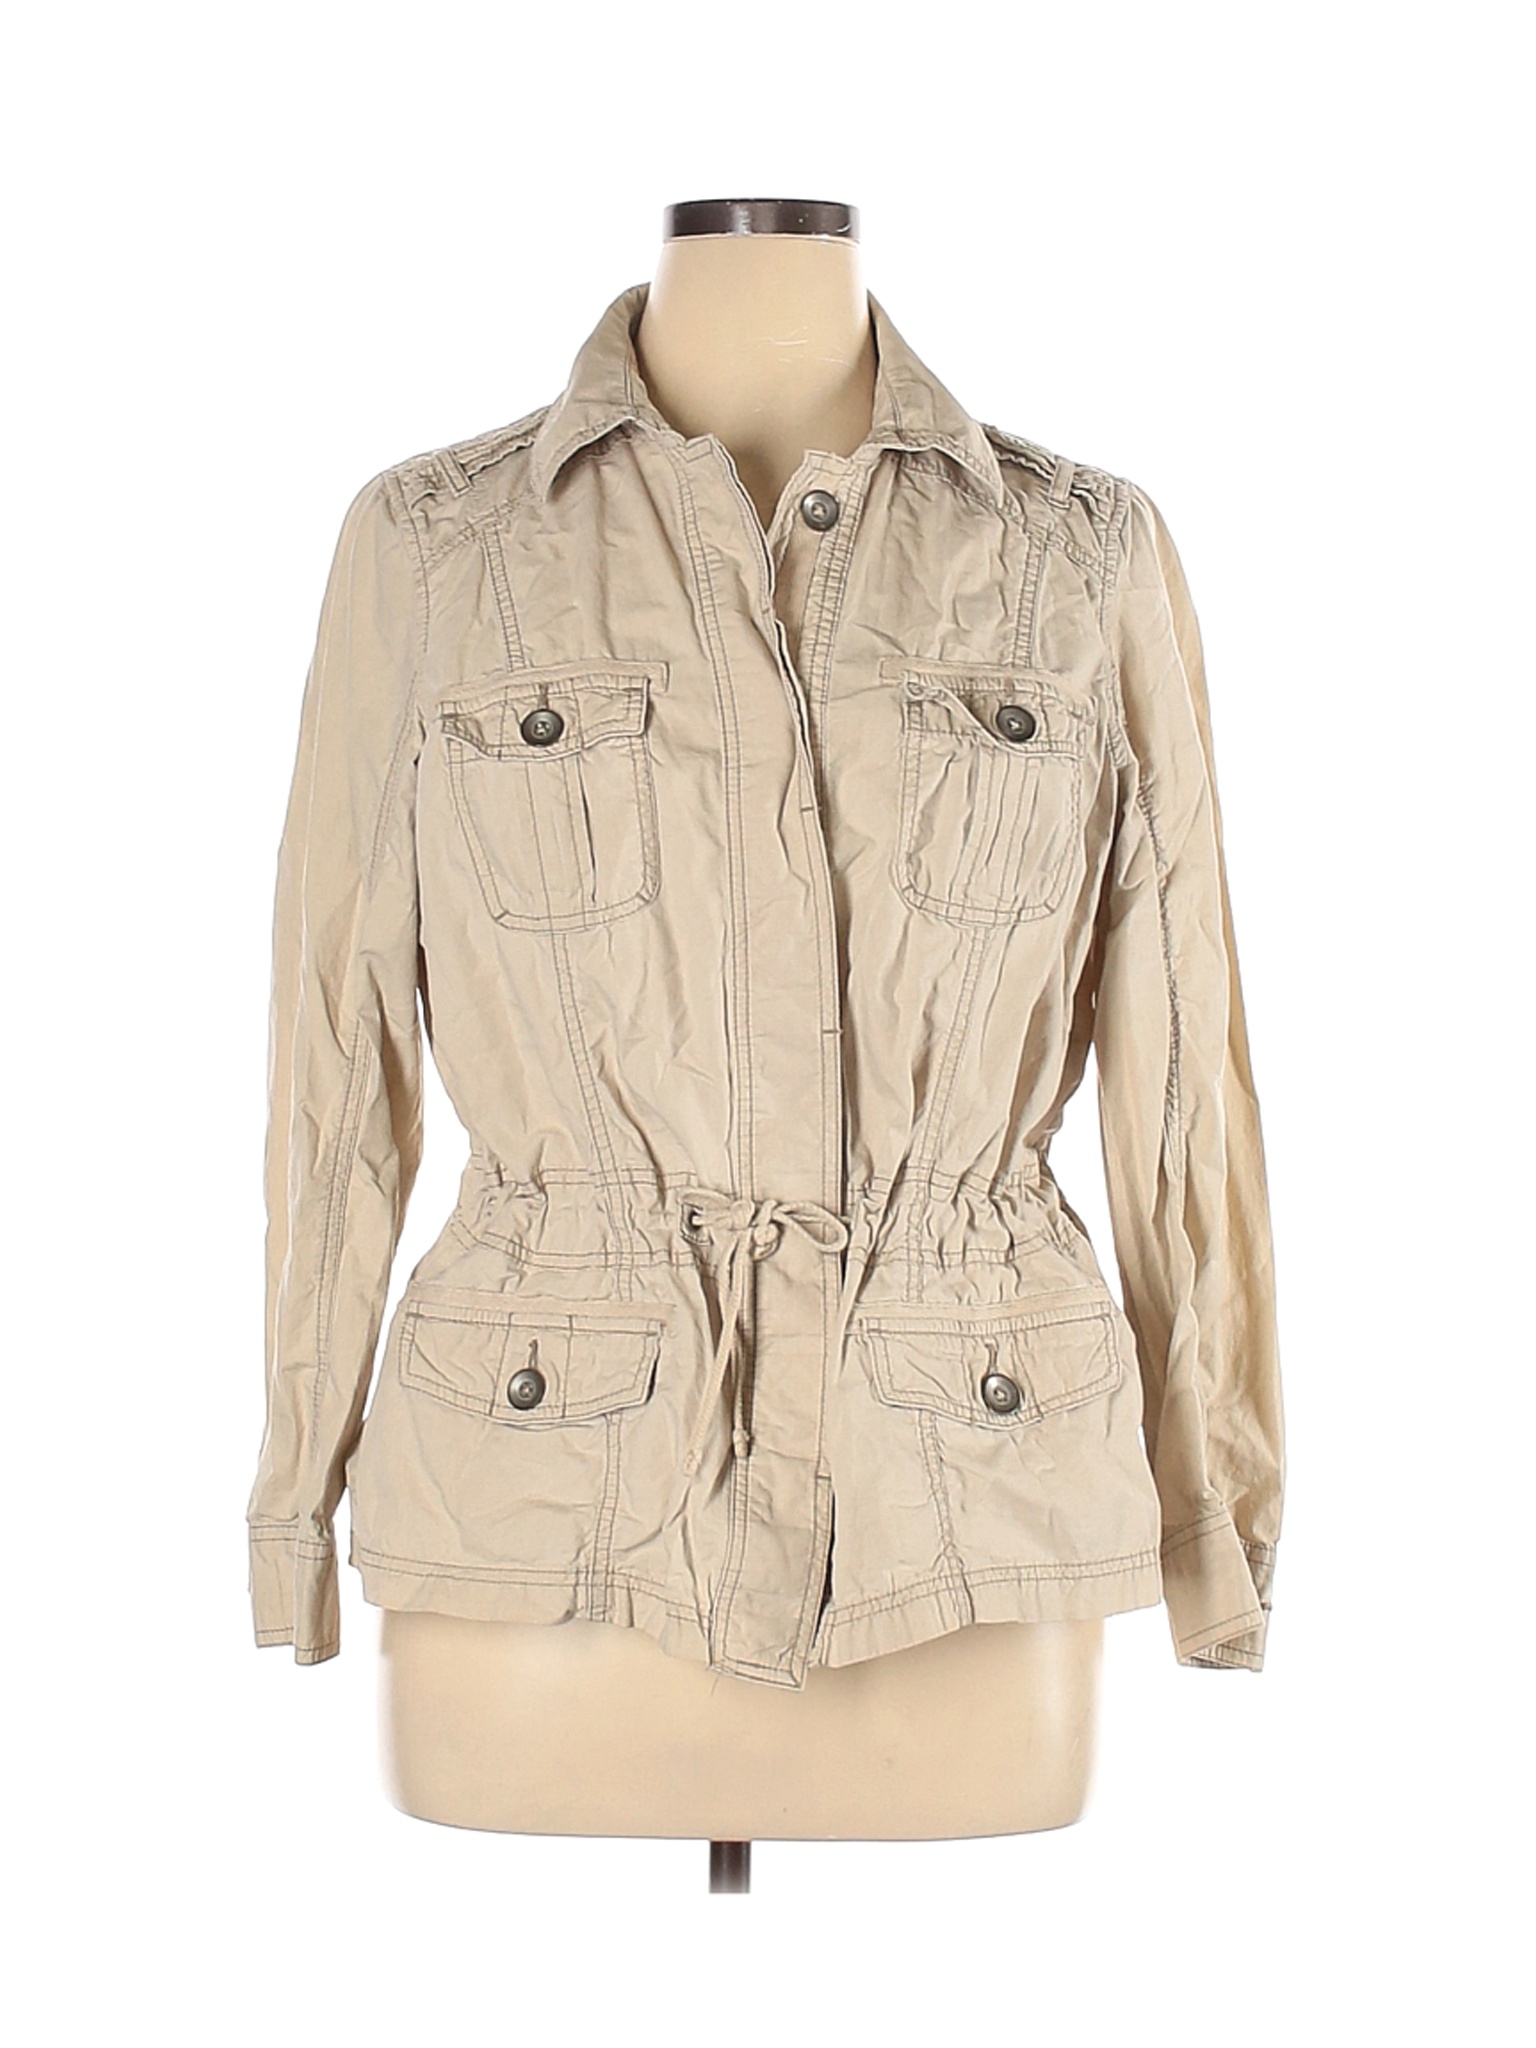 SONOMA life + style Women Brown Jacket 1X Plus | eBay